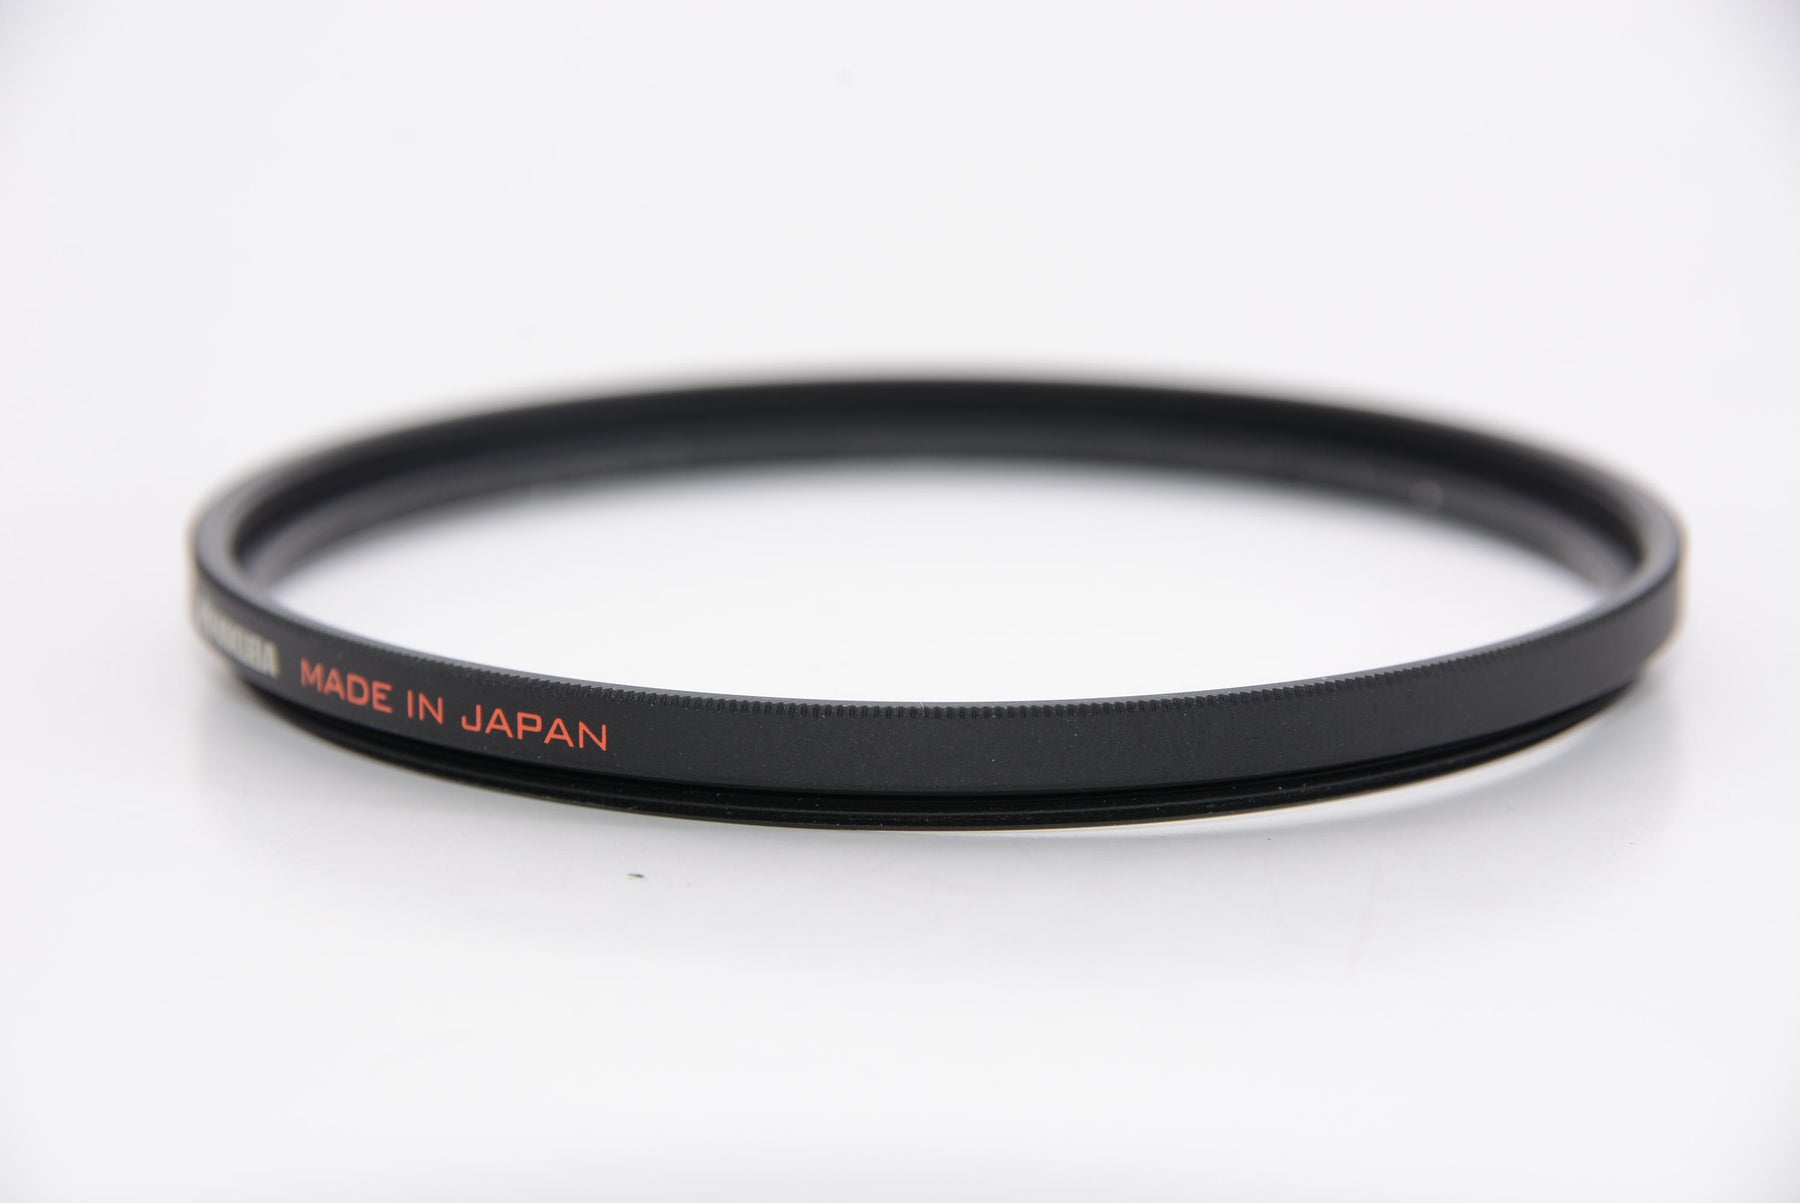 【外観特上級】HAKUBA 67mm レンズフィルター XC-PRO 高透過率 撥水防汚 薄枠 日本製 レンズ保護用 CF-XCPRLG67